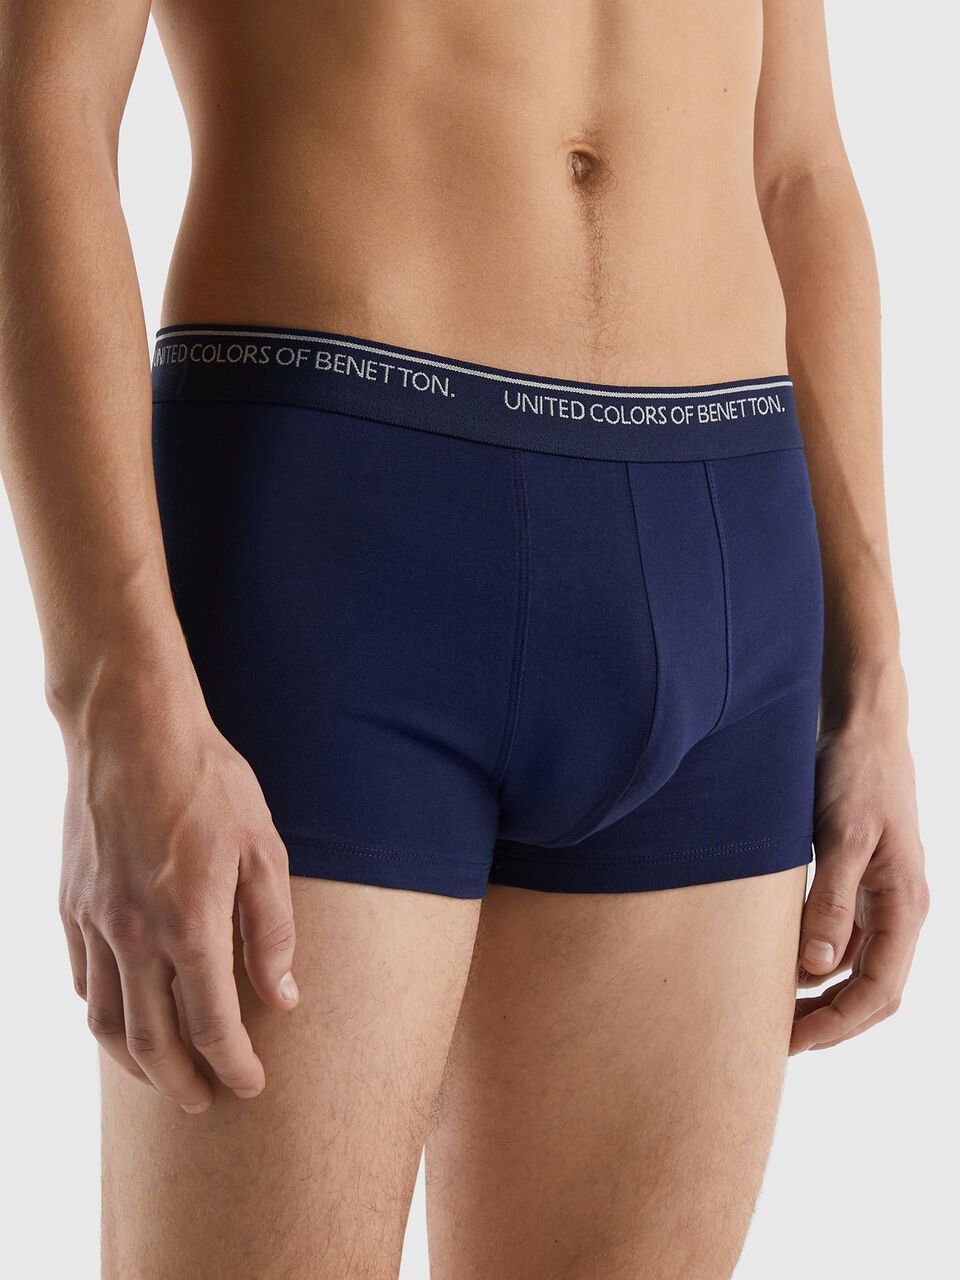 Underwear in organic cotton Dark Blue  Benetton Mens Underwear and Pyjamas  - Panna Holidays